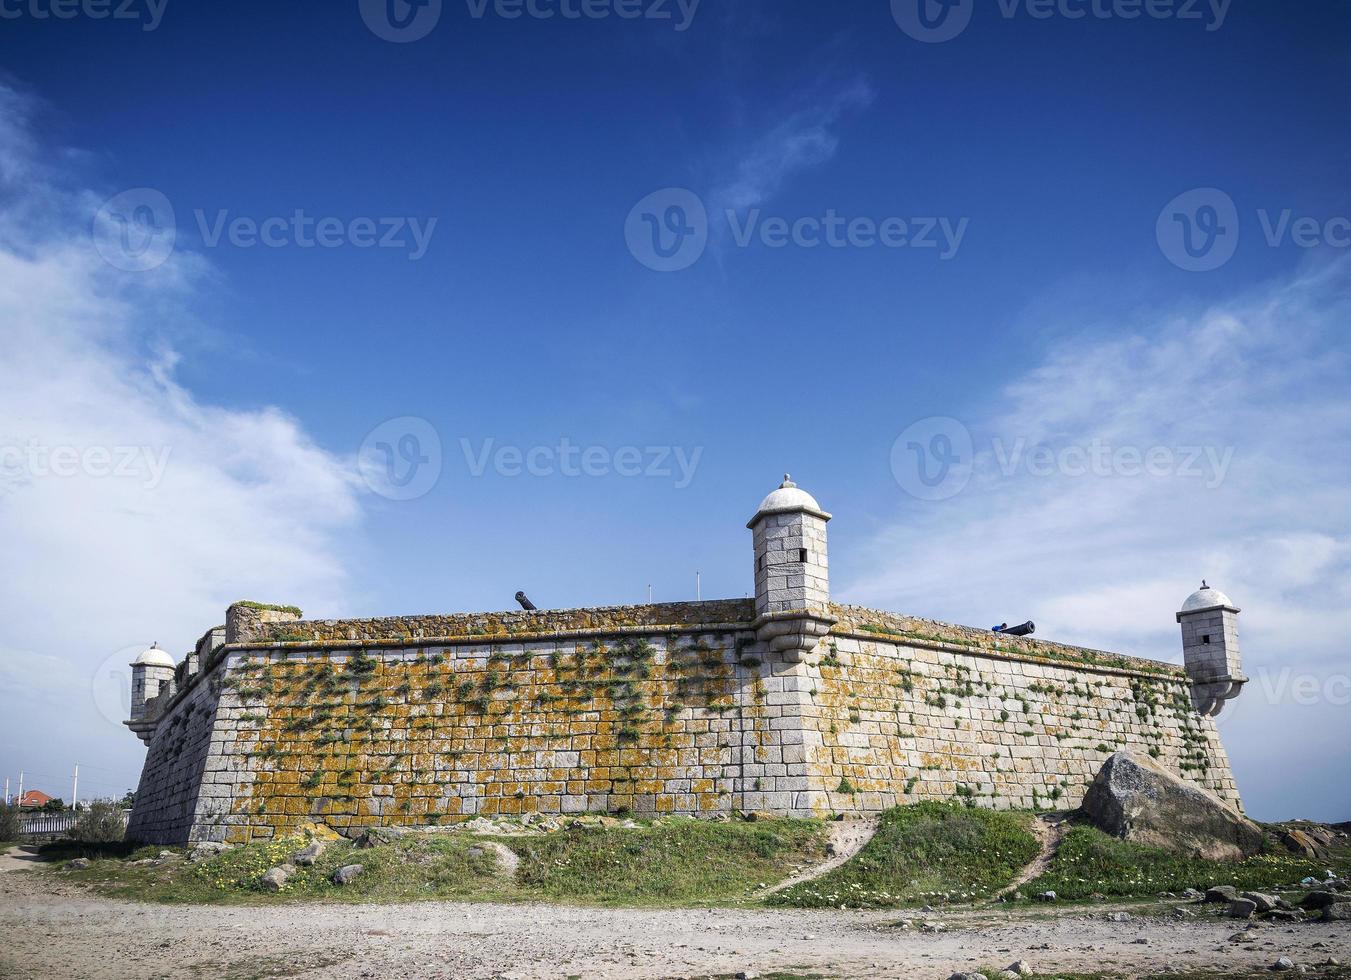 Castelo do Queijo fort emblemático en la costa de Porto Portugal foto